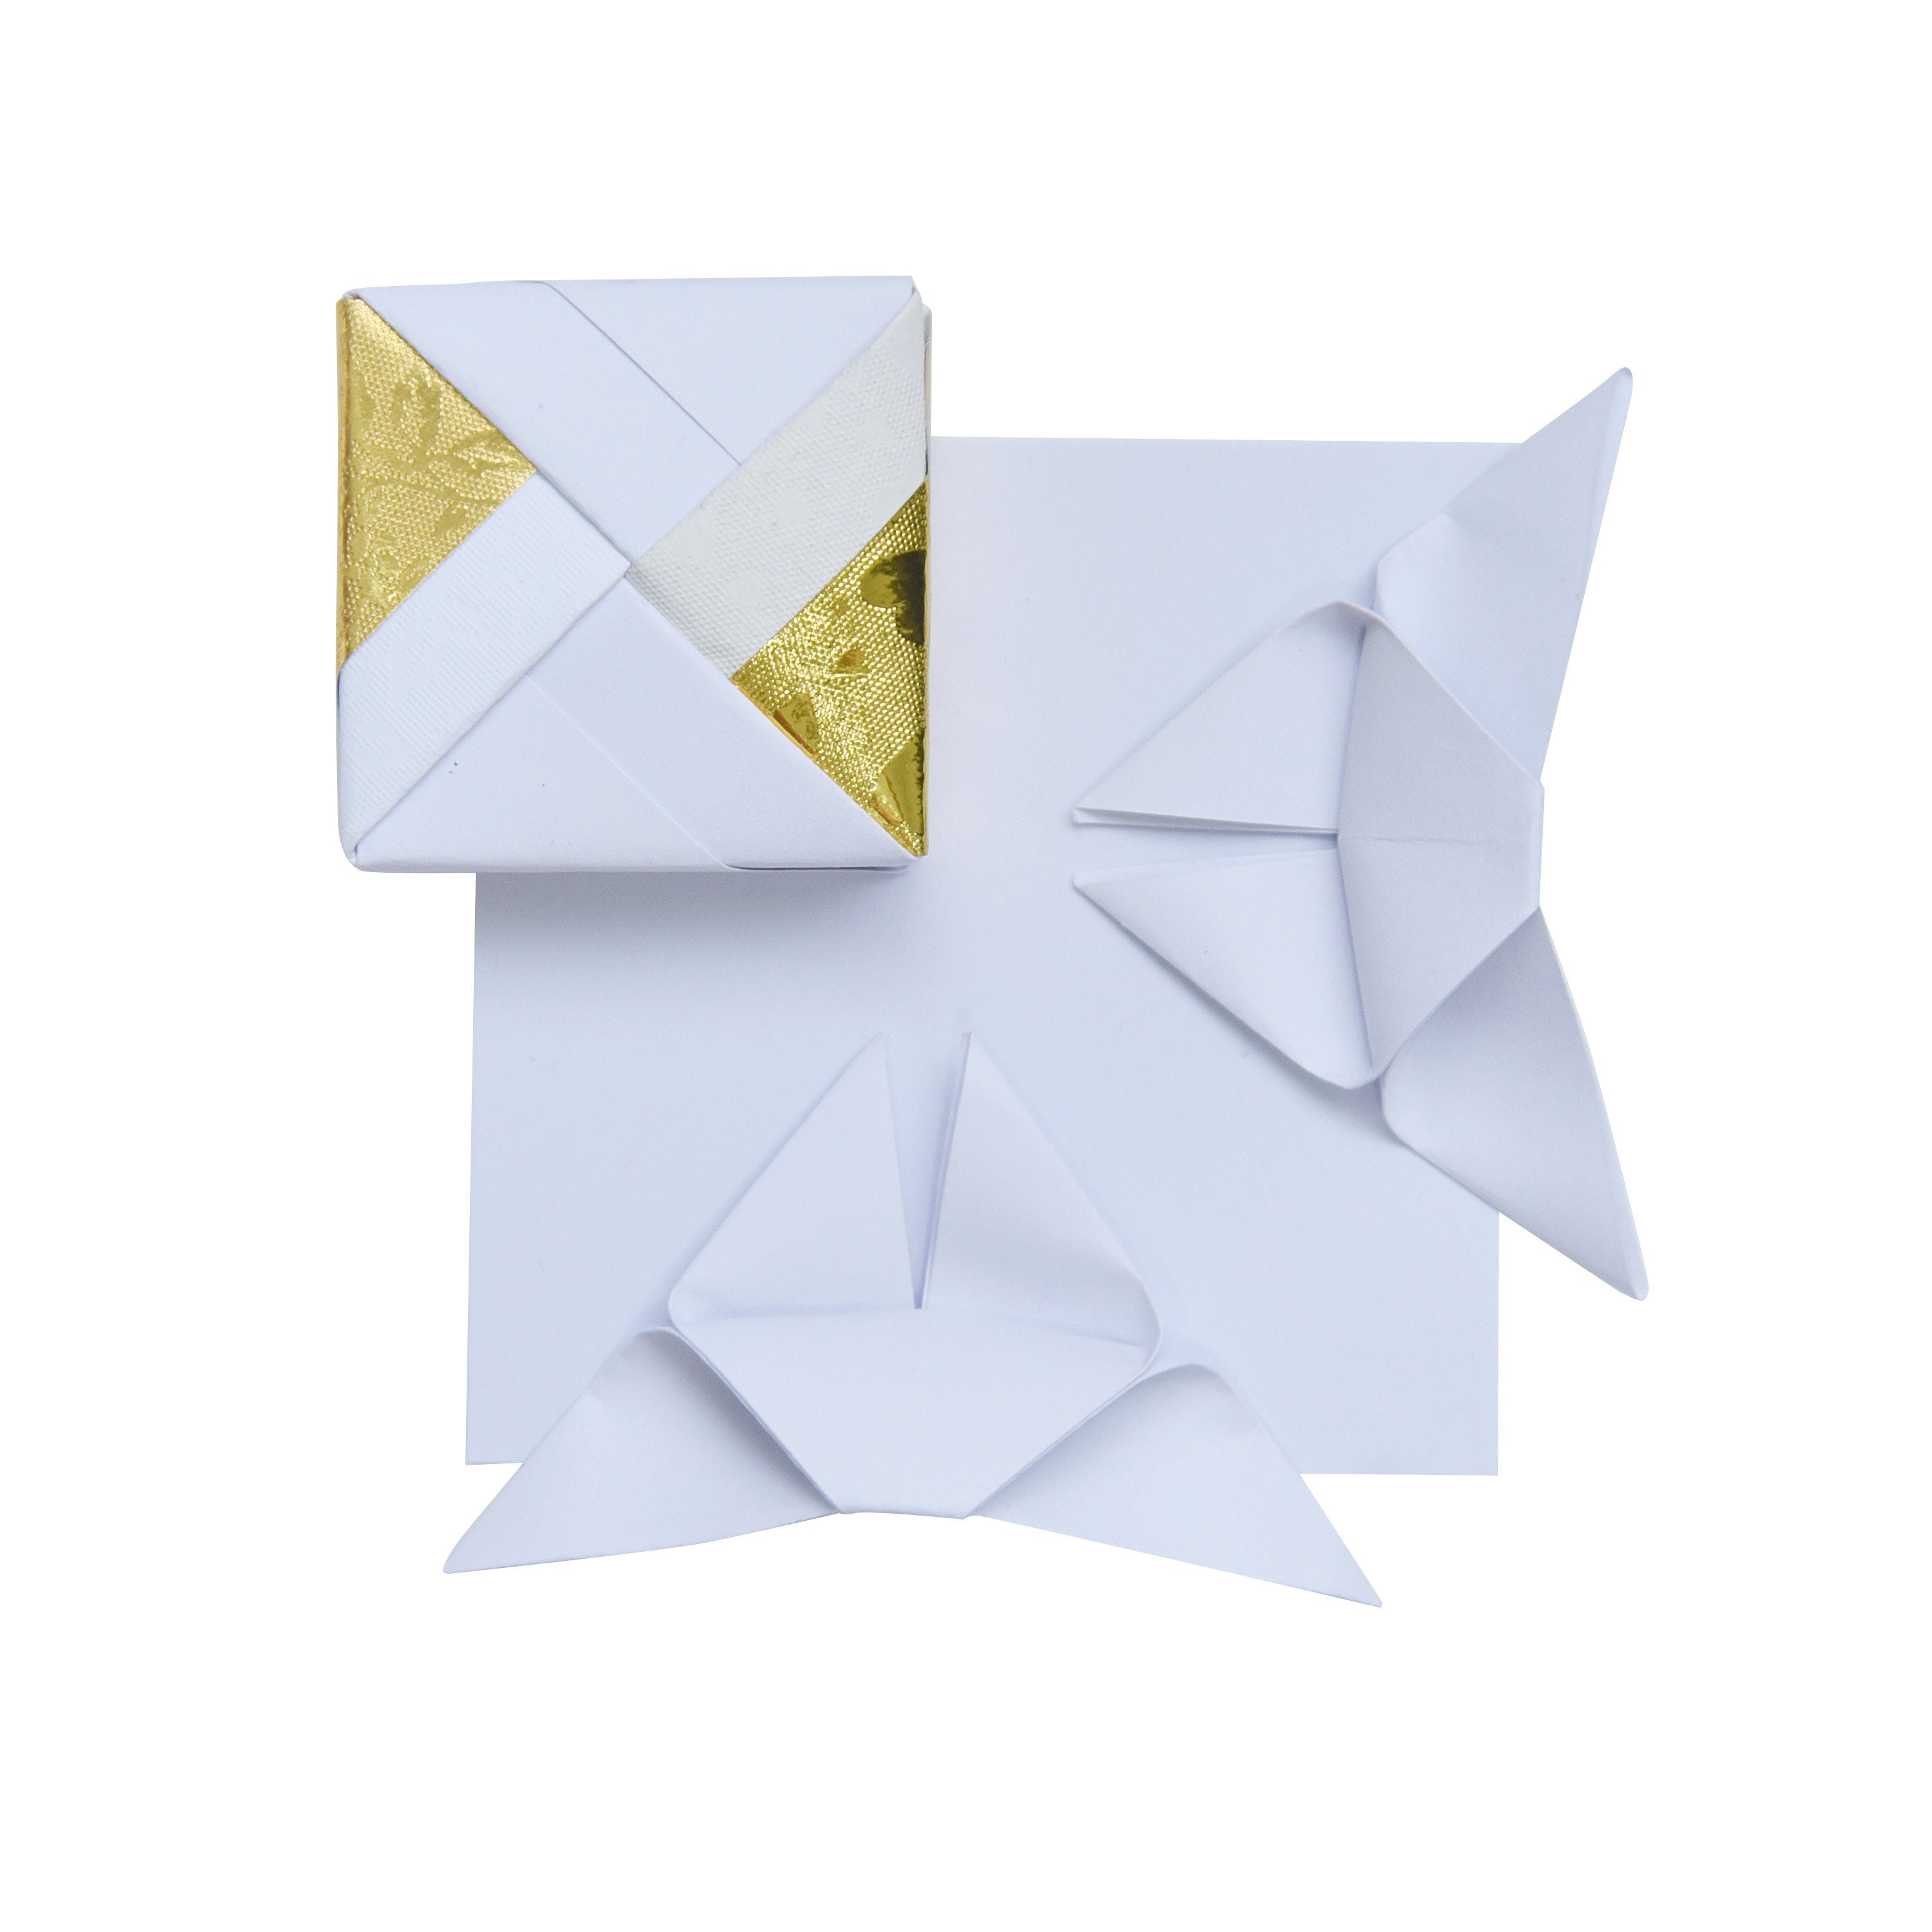 100 hojas de papel de origami blanco - 3x3 pulgadas - Paquete de papel cuadrado para plegar, grullas de origami y decoración